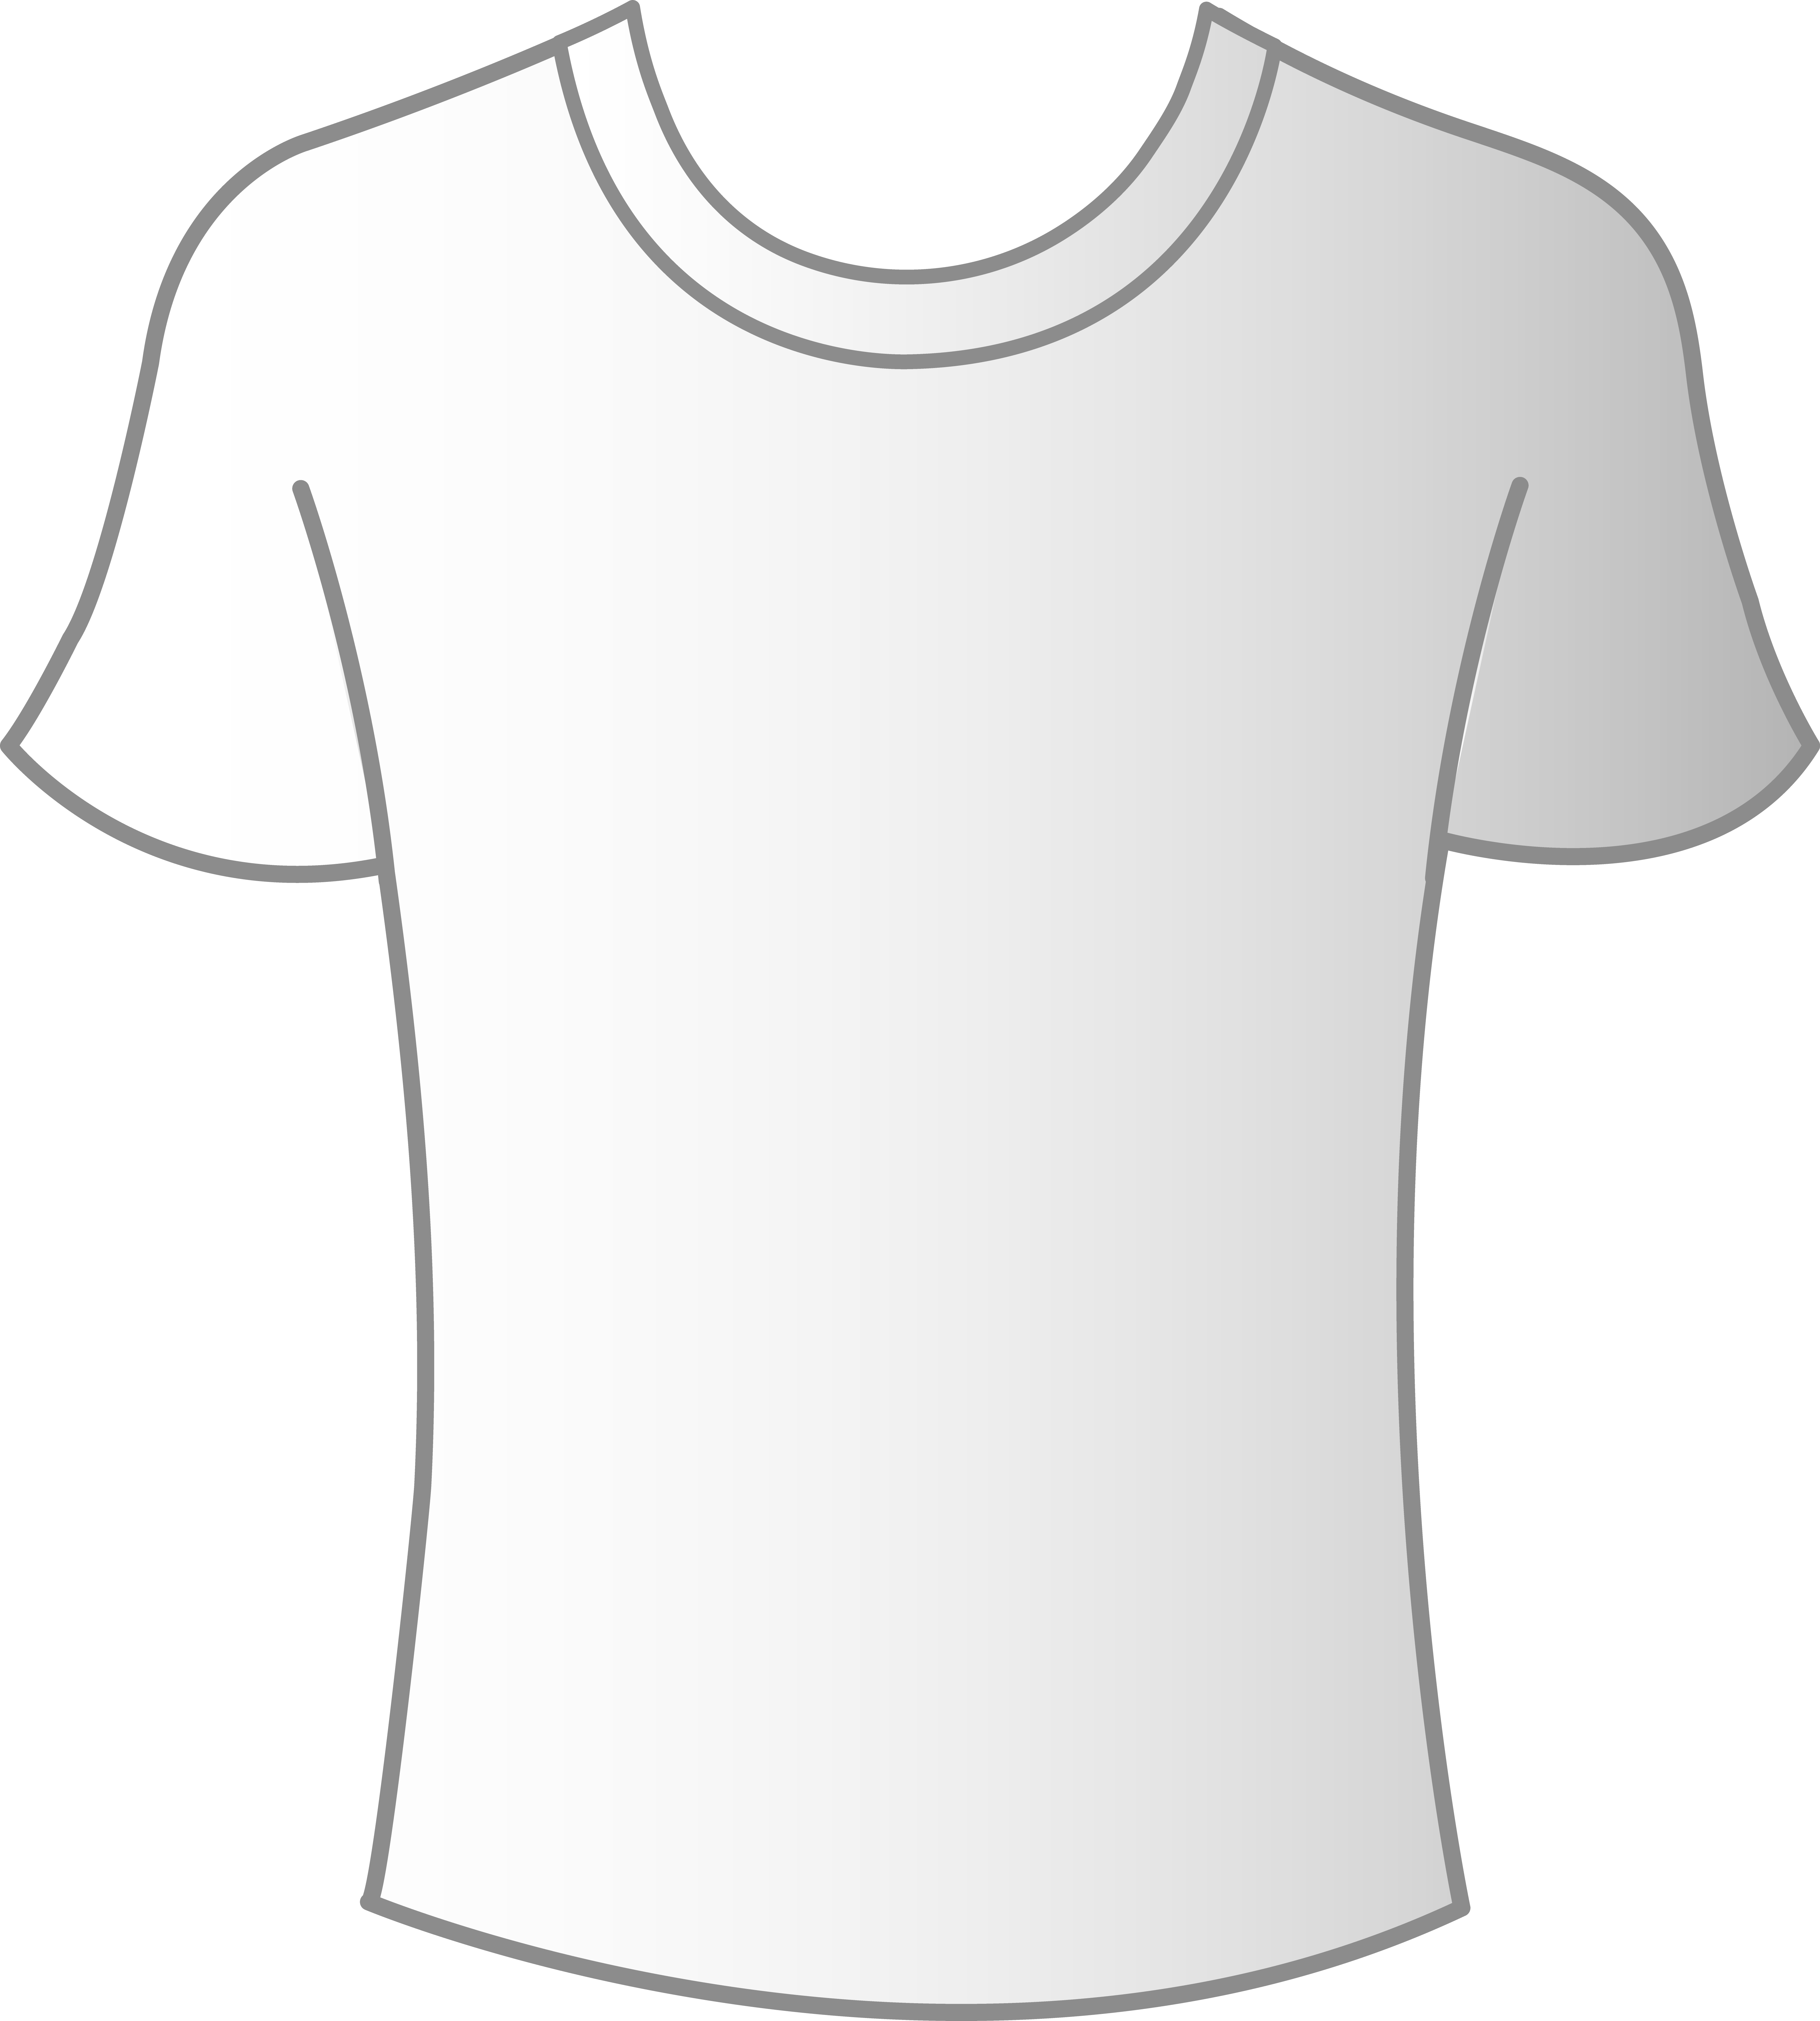 Images For > Plain White Shirt